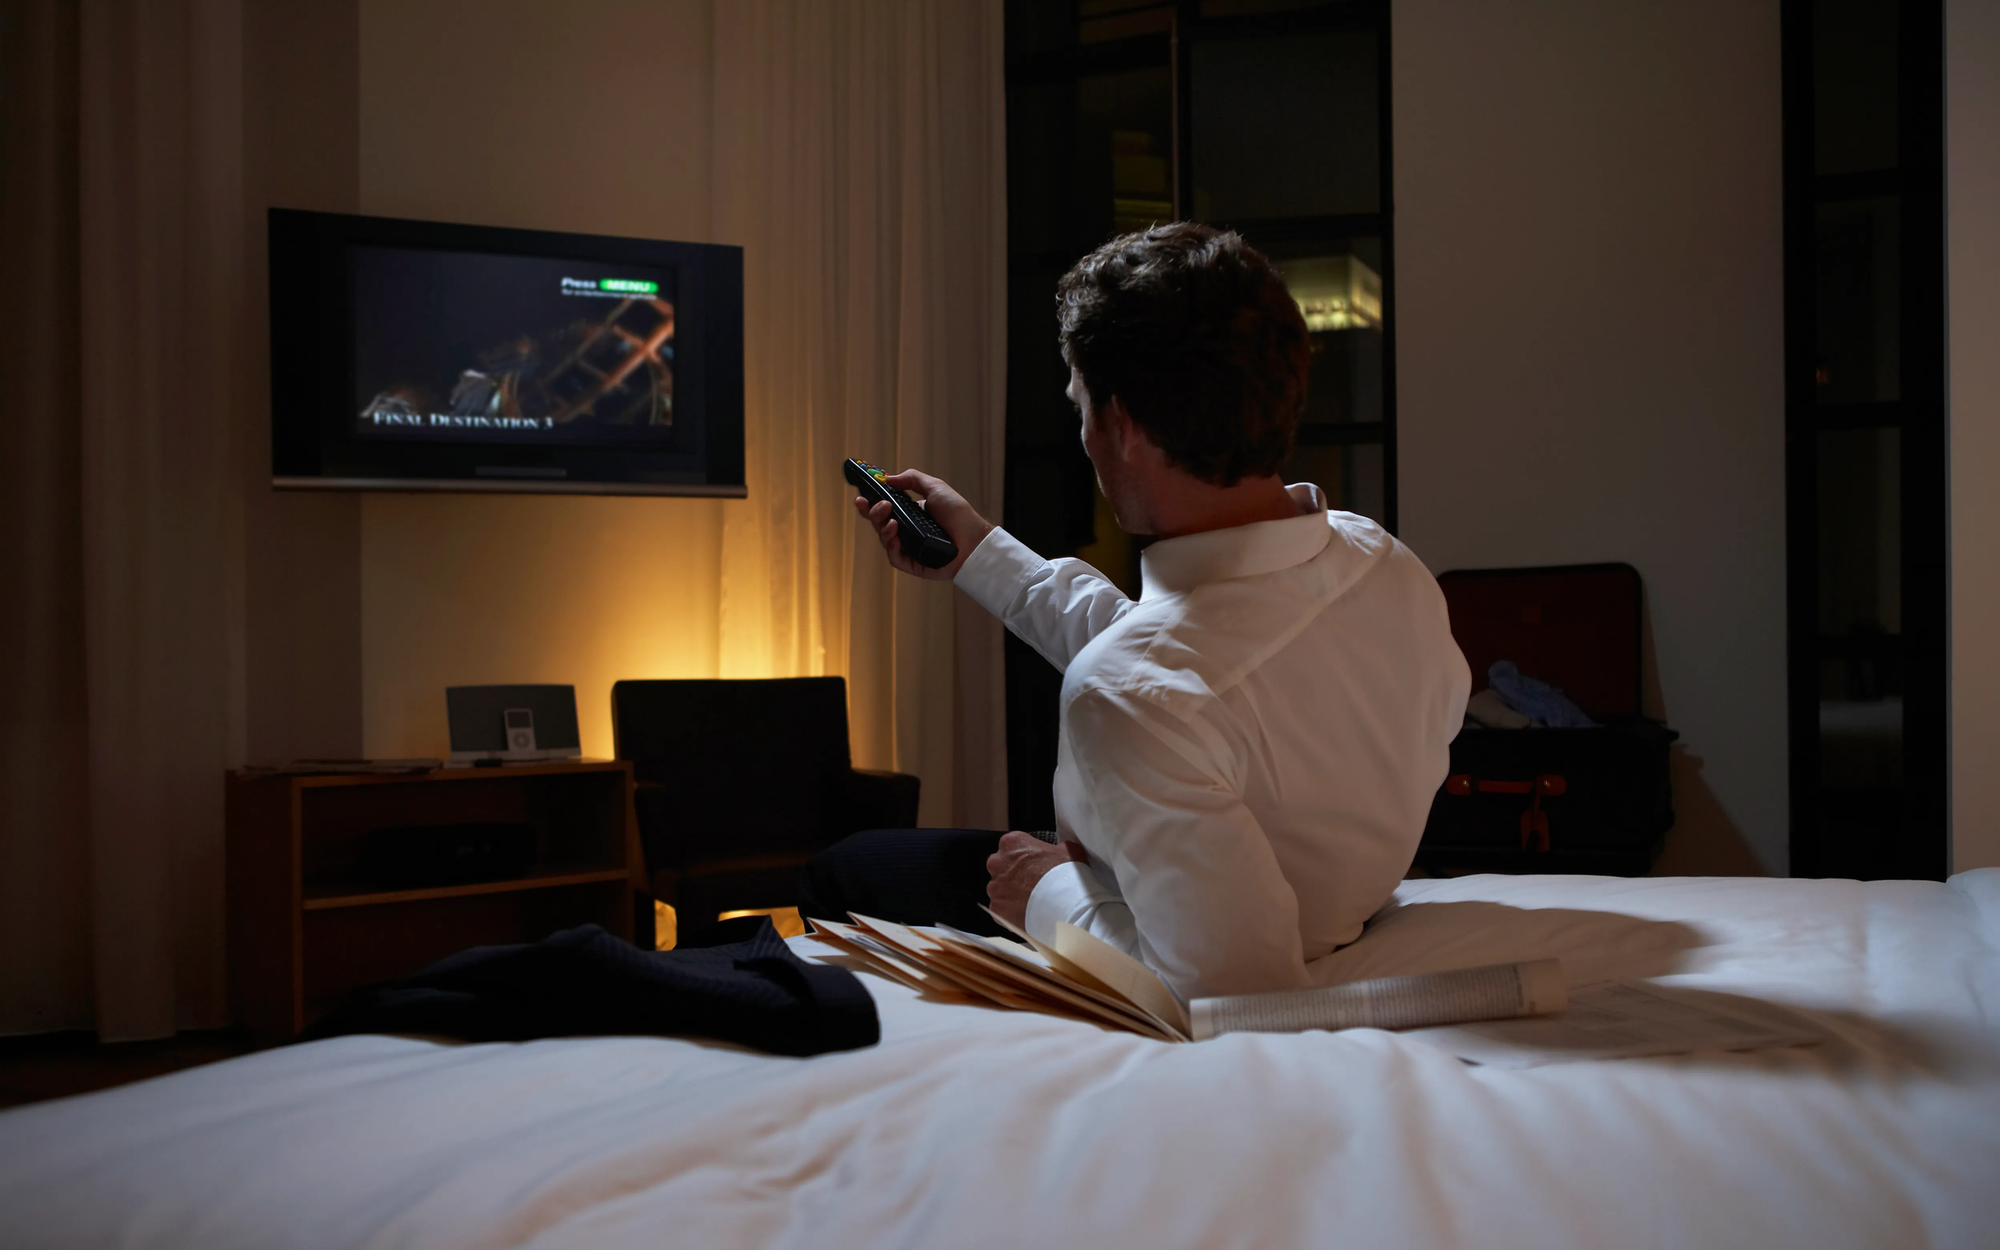 Có ai giải thích được vì sao những chiếc TV trong khách sạn thường 'rất đểu' không?